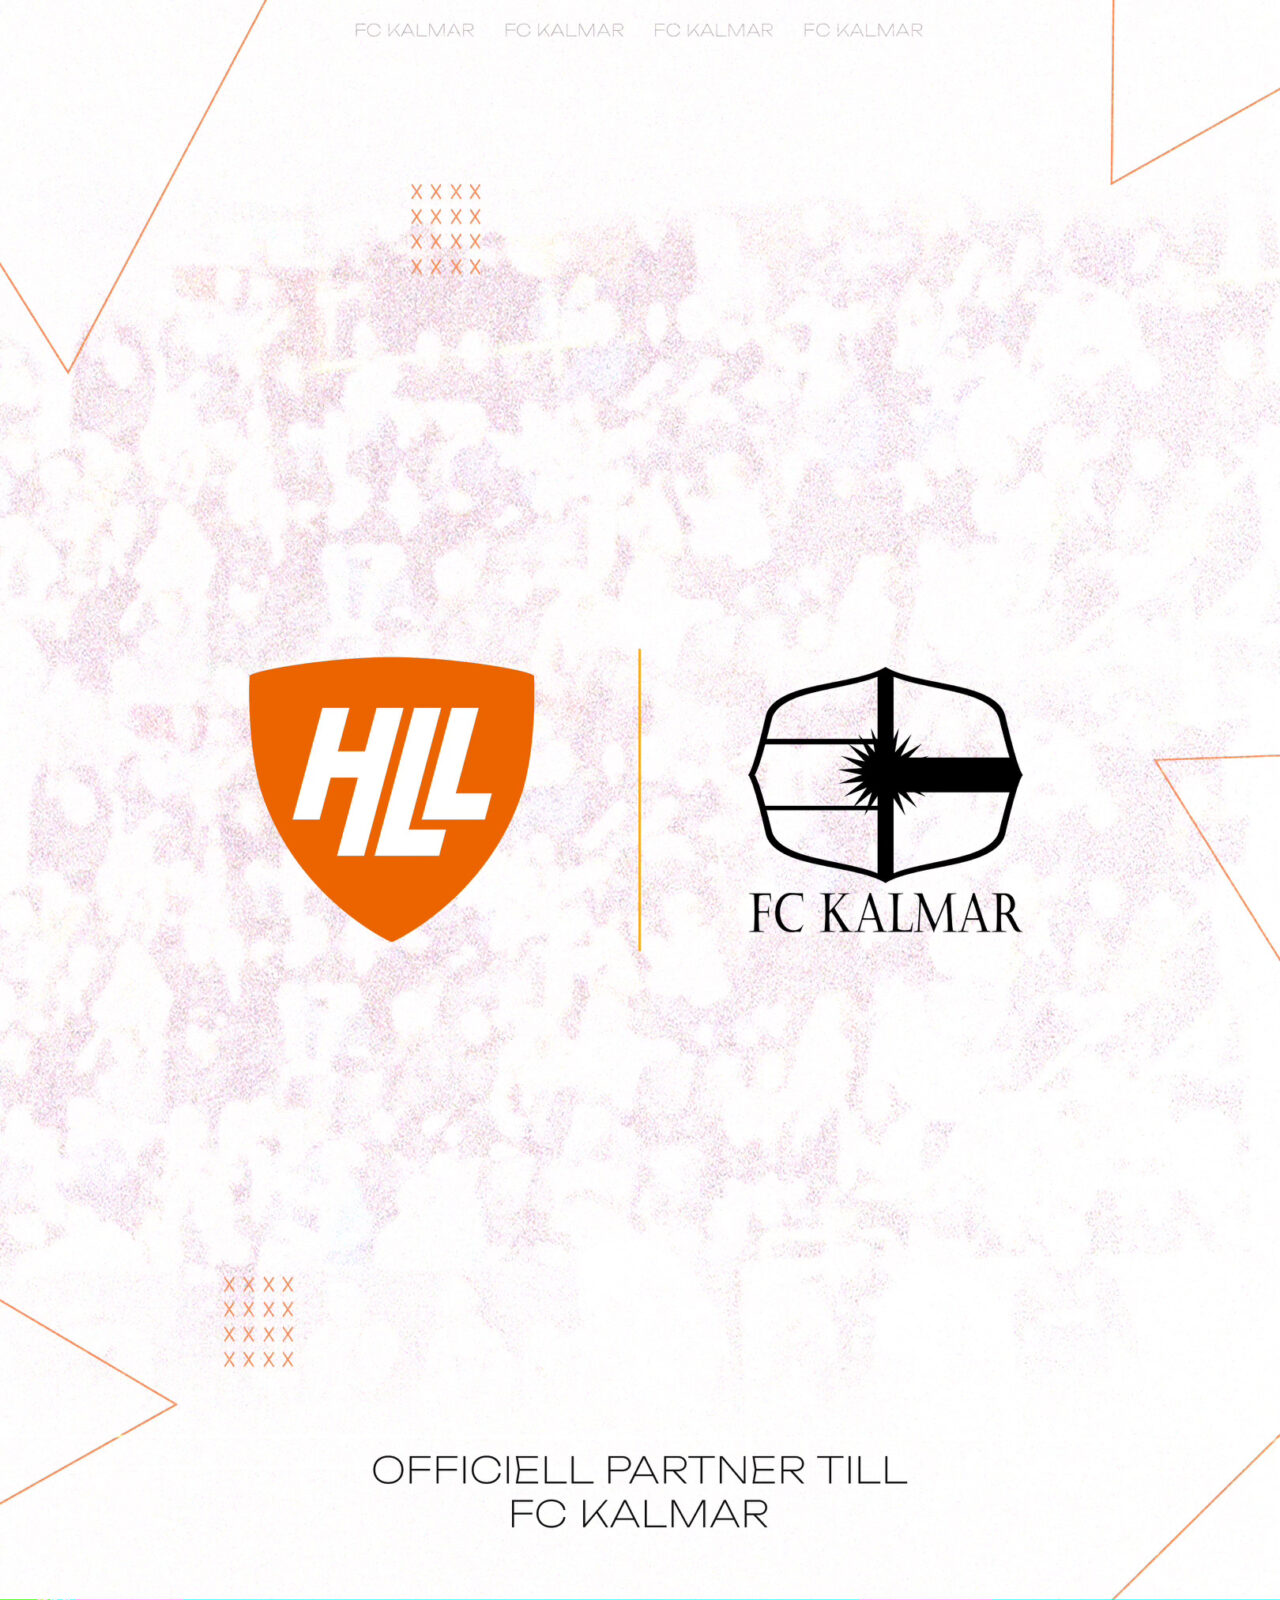 Hyreslandslaget blir ny officiell partner till FC Kalmar!